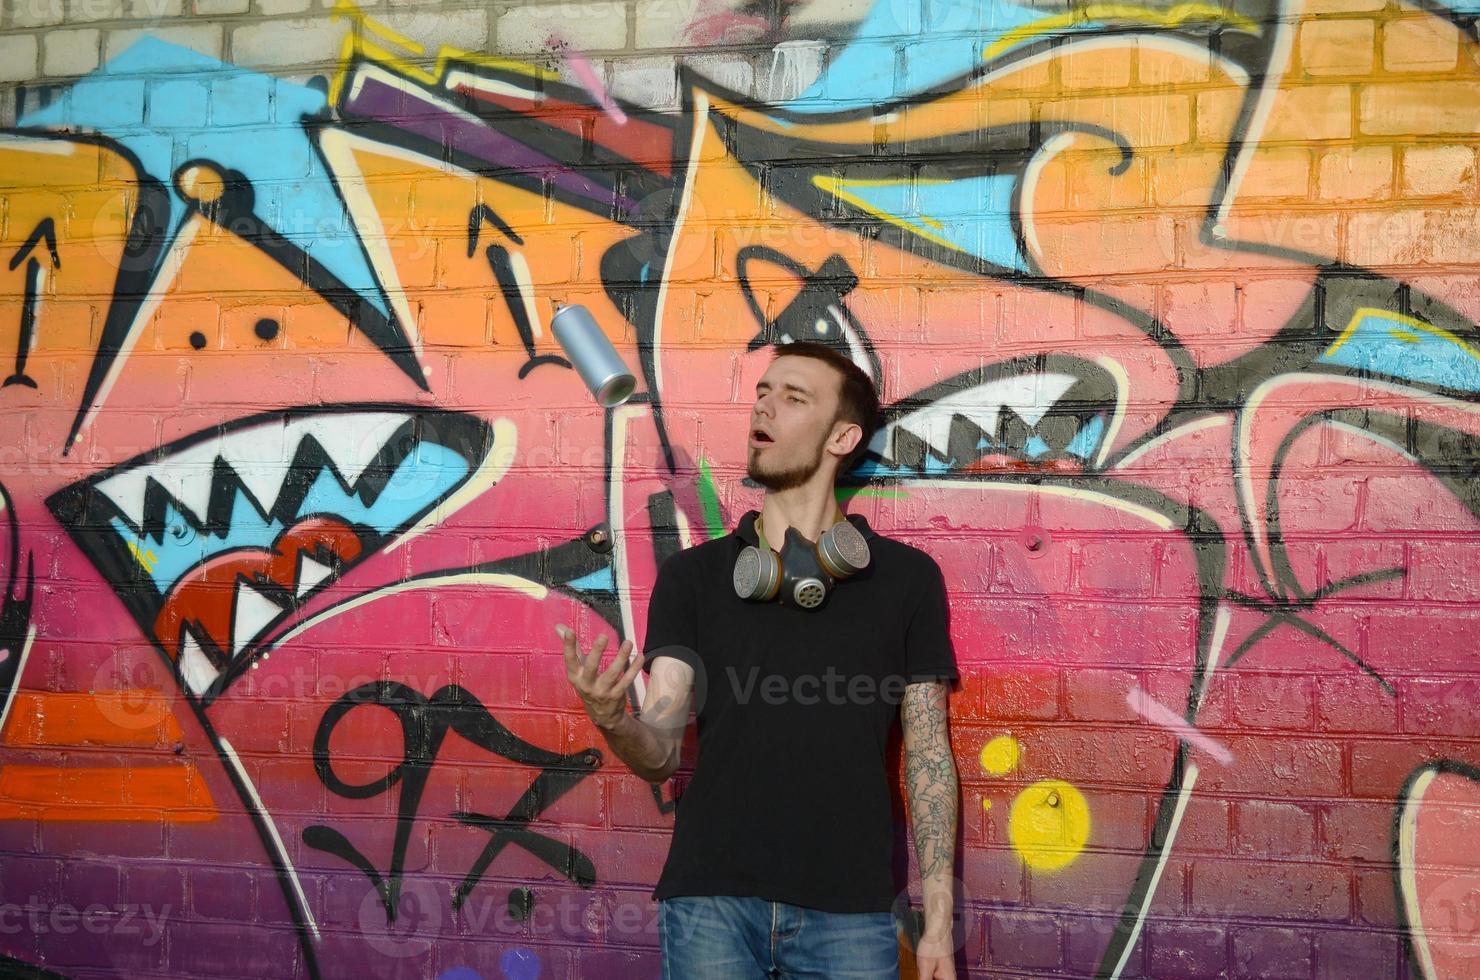 ung graffiti konstnär med gas mask på hans nacke kasta hans spray kan mot färgrik rosa graffiti på tegel vägg. gata konst och samtida målning bearbeta foto